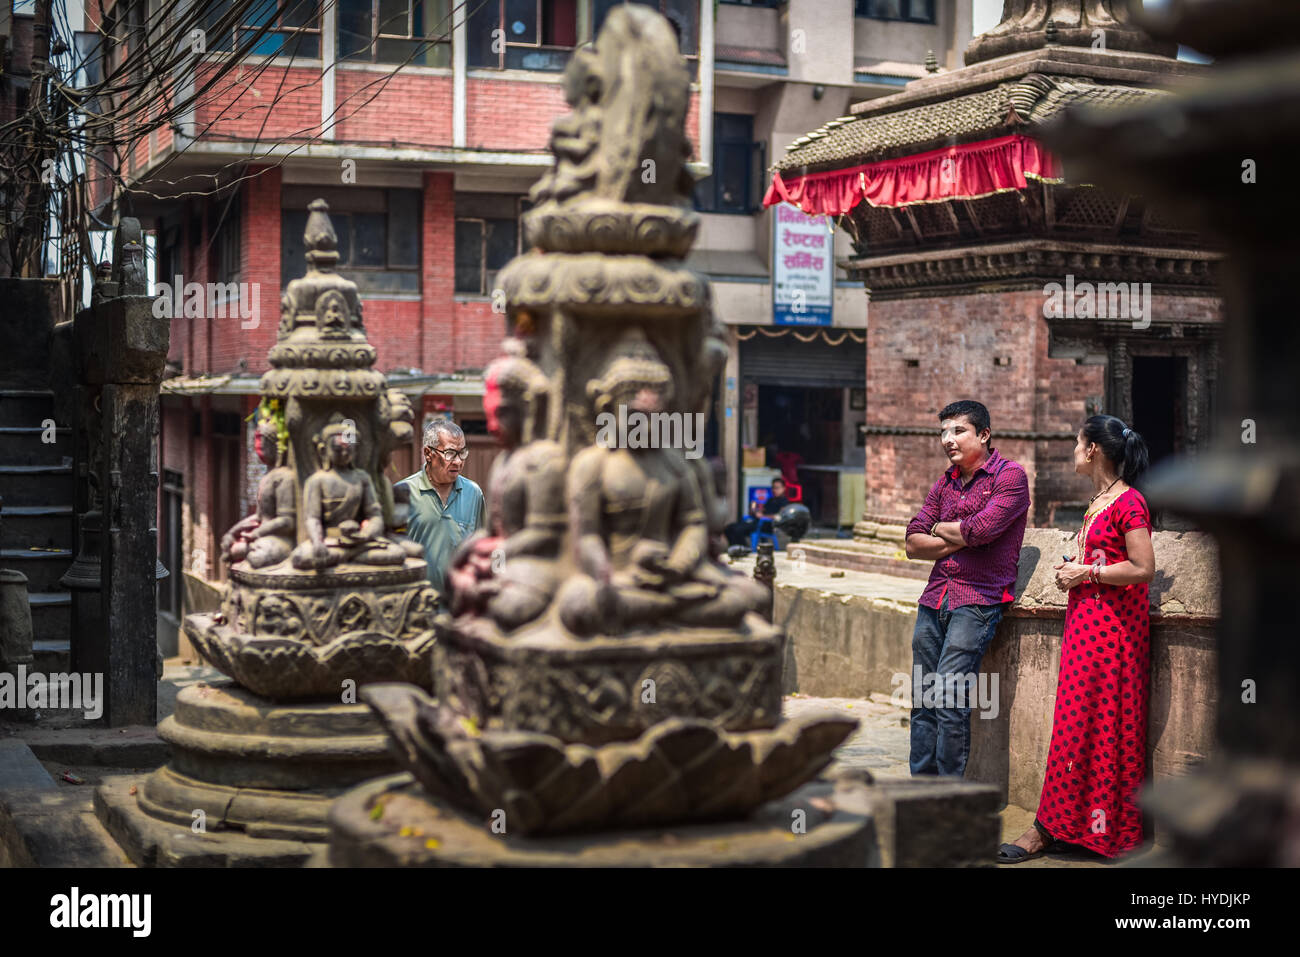 Les gens de la région ayant du temps libre près de sculptures hindoues dans le quartier résidentiel de Katmandou, au Népal. Banque D'Images